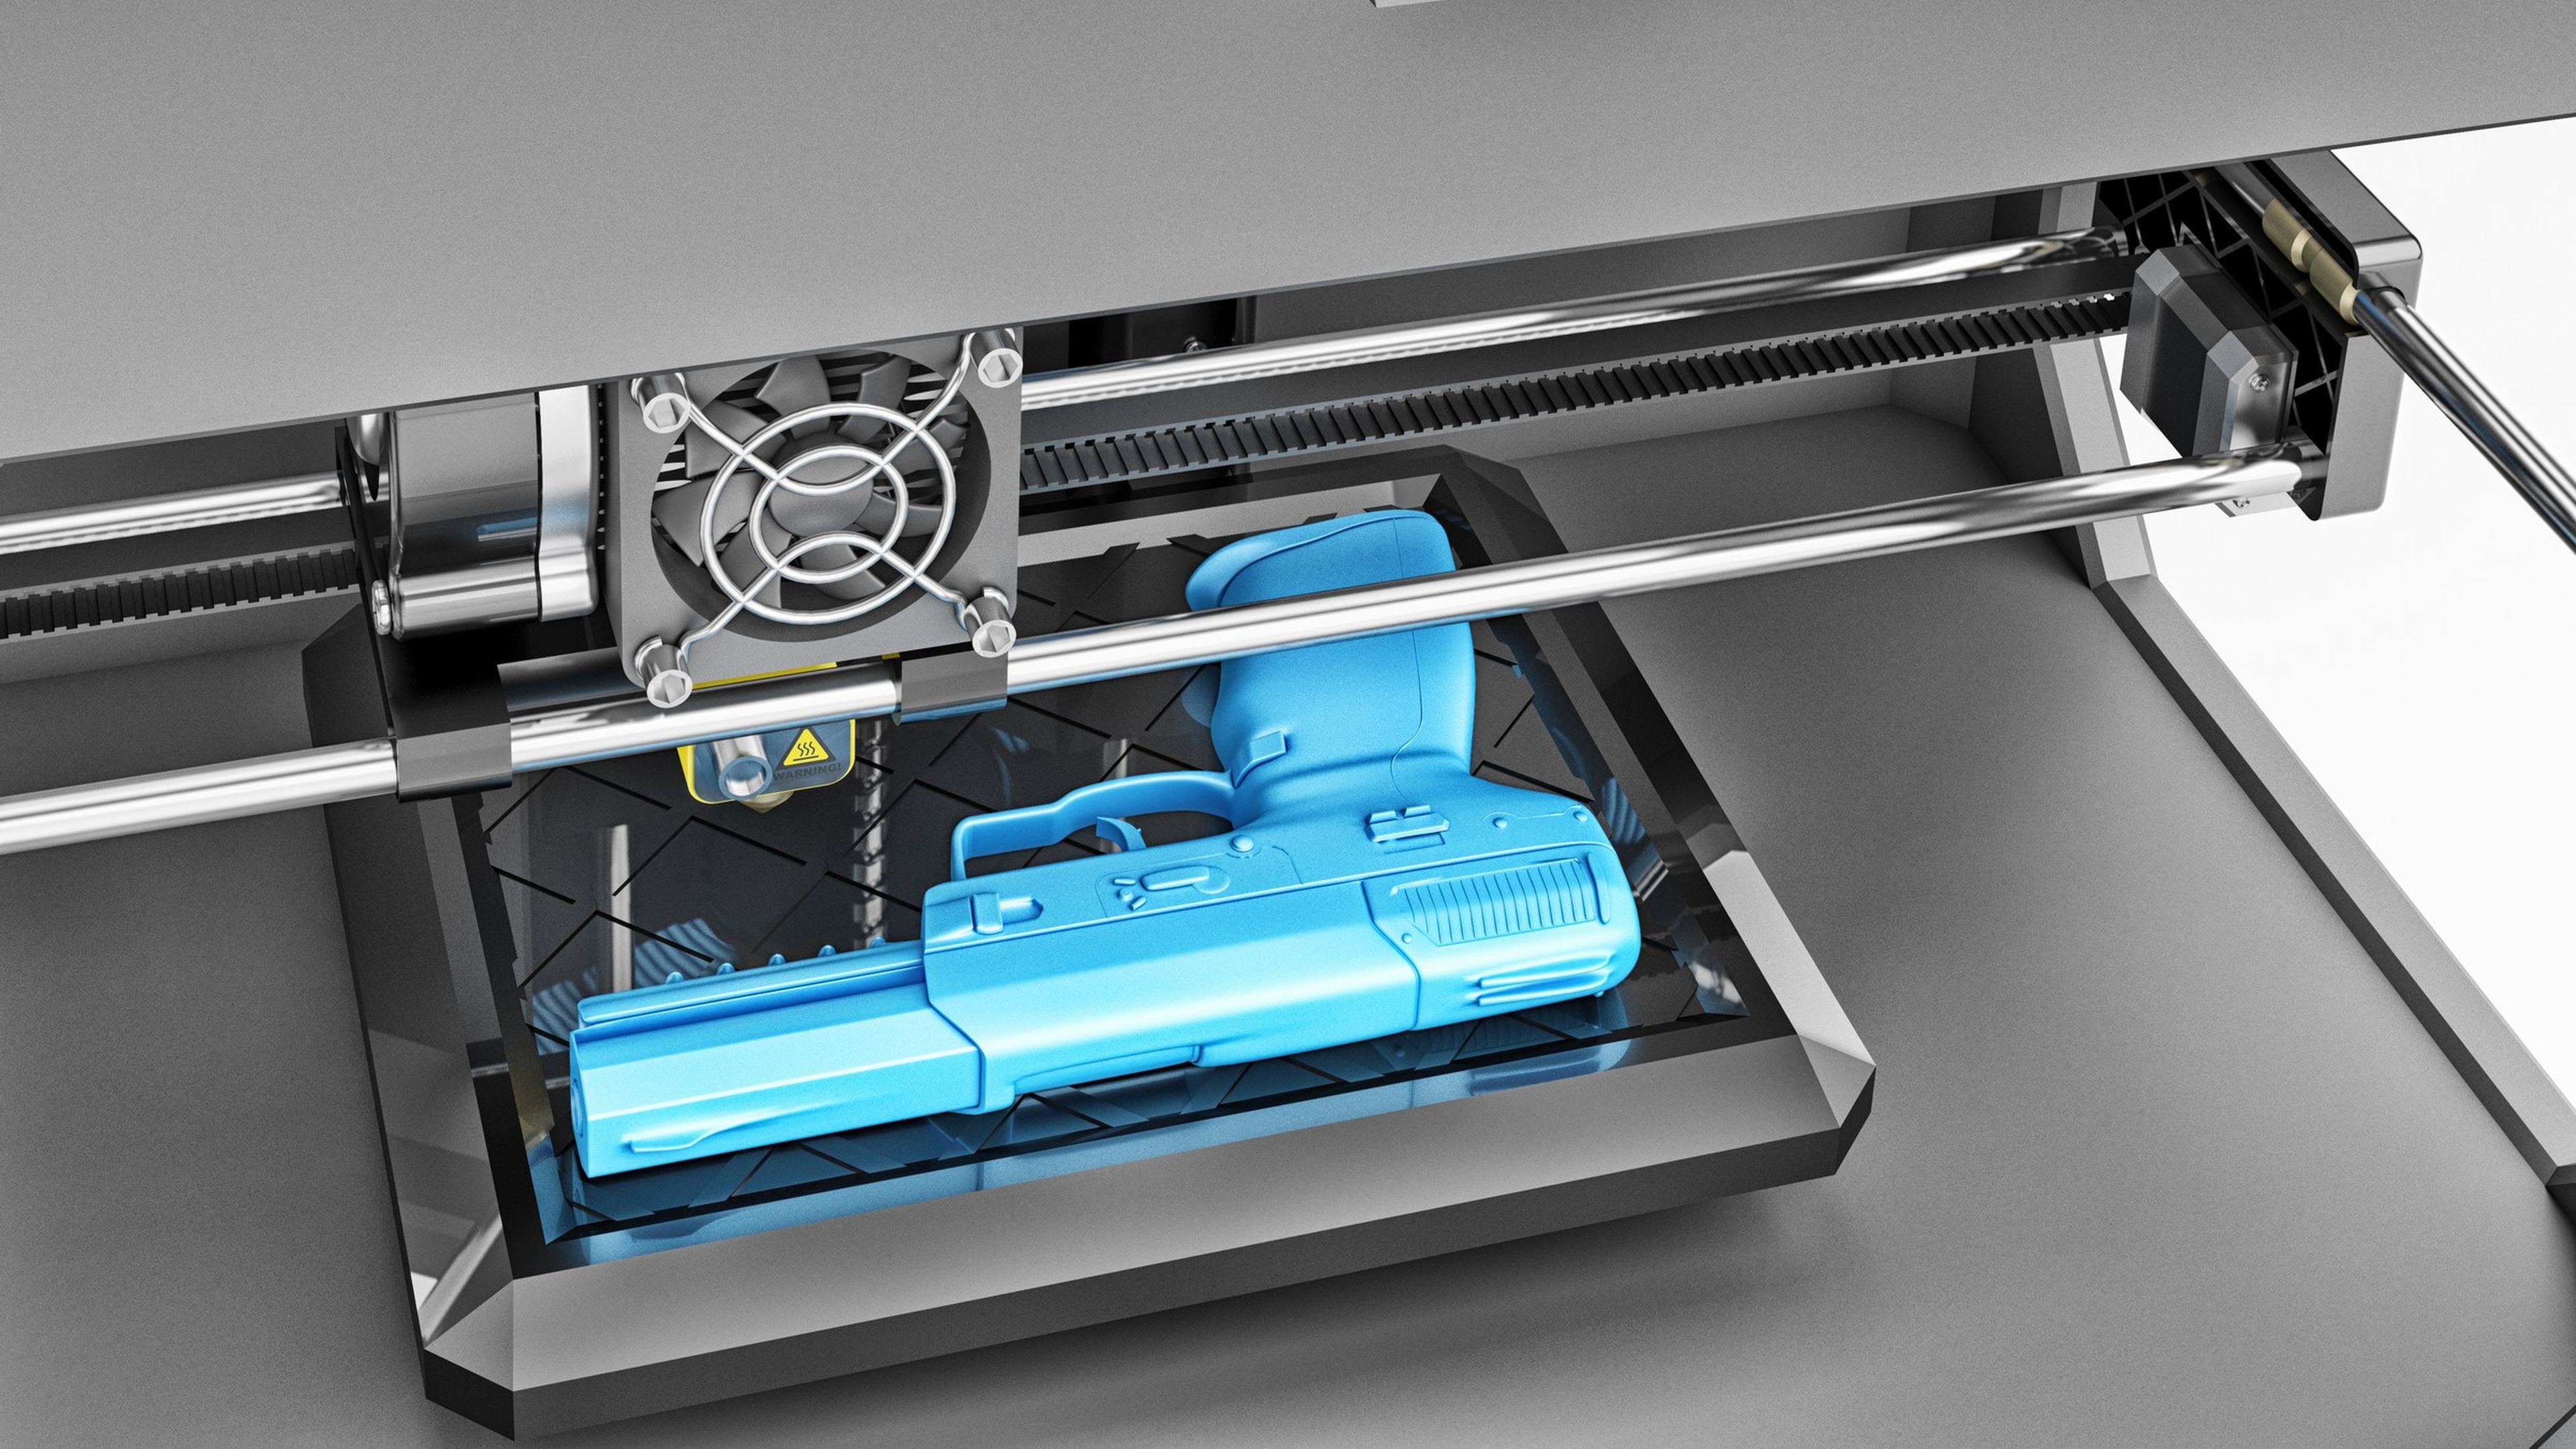 Estados Unidos investigará los antecedentes policiales al comprar una impresora 3D